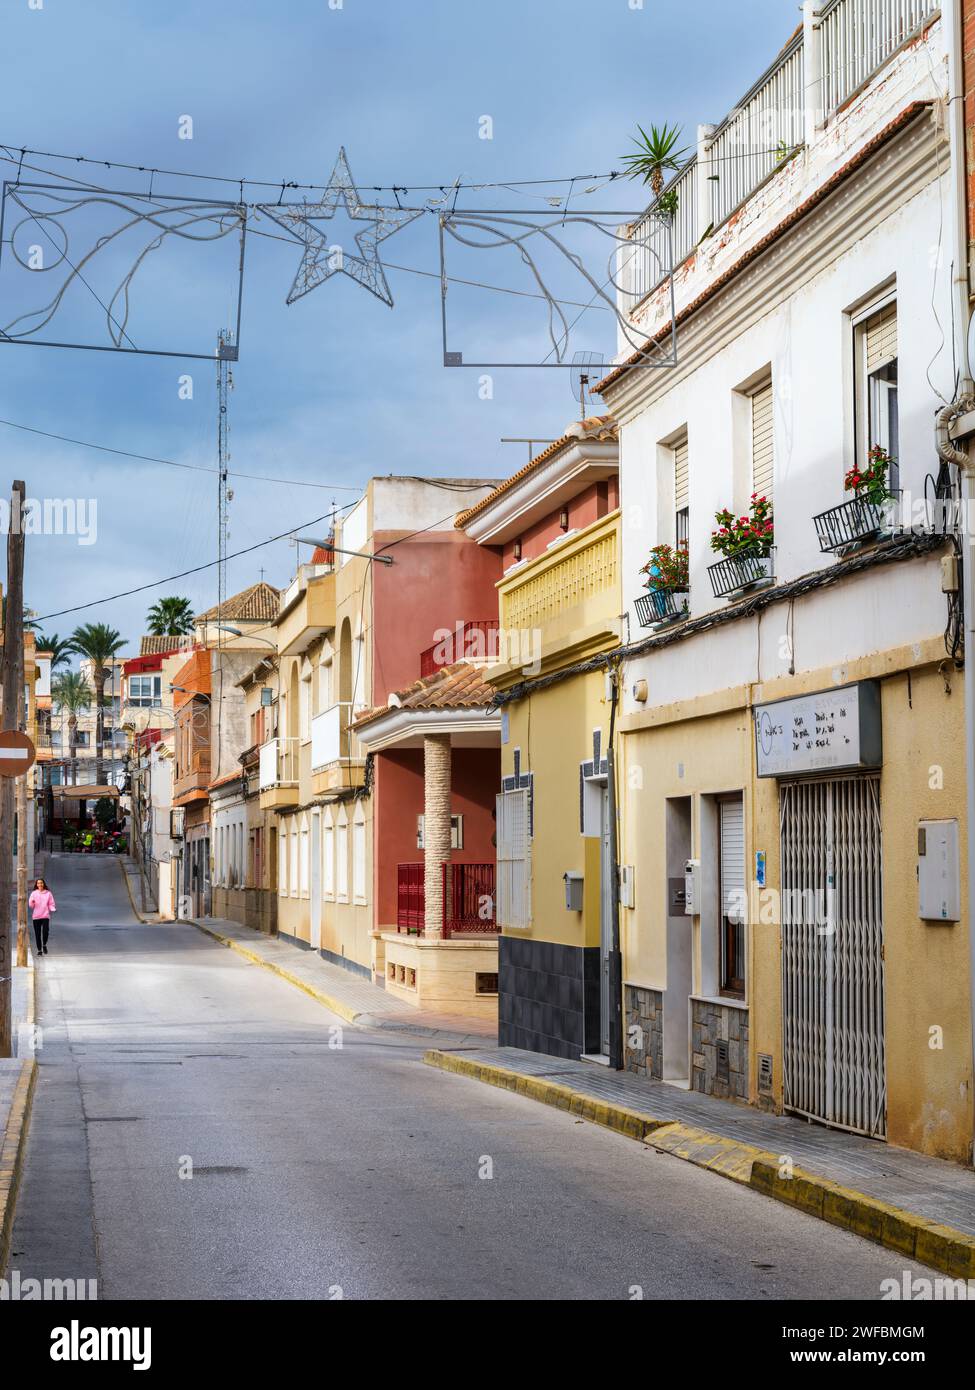 Calle de Miguel Joaquín Ortuño Lorente - San Miguel de Salinas, Alicante, Espagne. Une des rues pittoresques bordées d'une variété de petites maisons a Banque D'Images